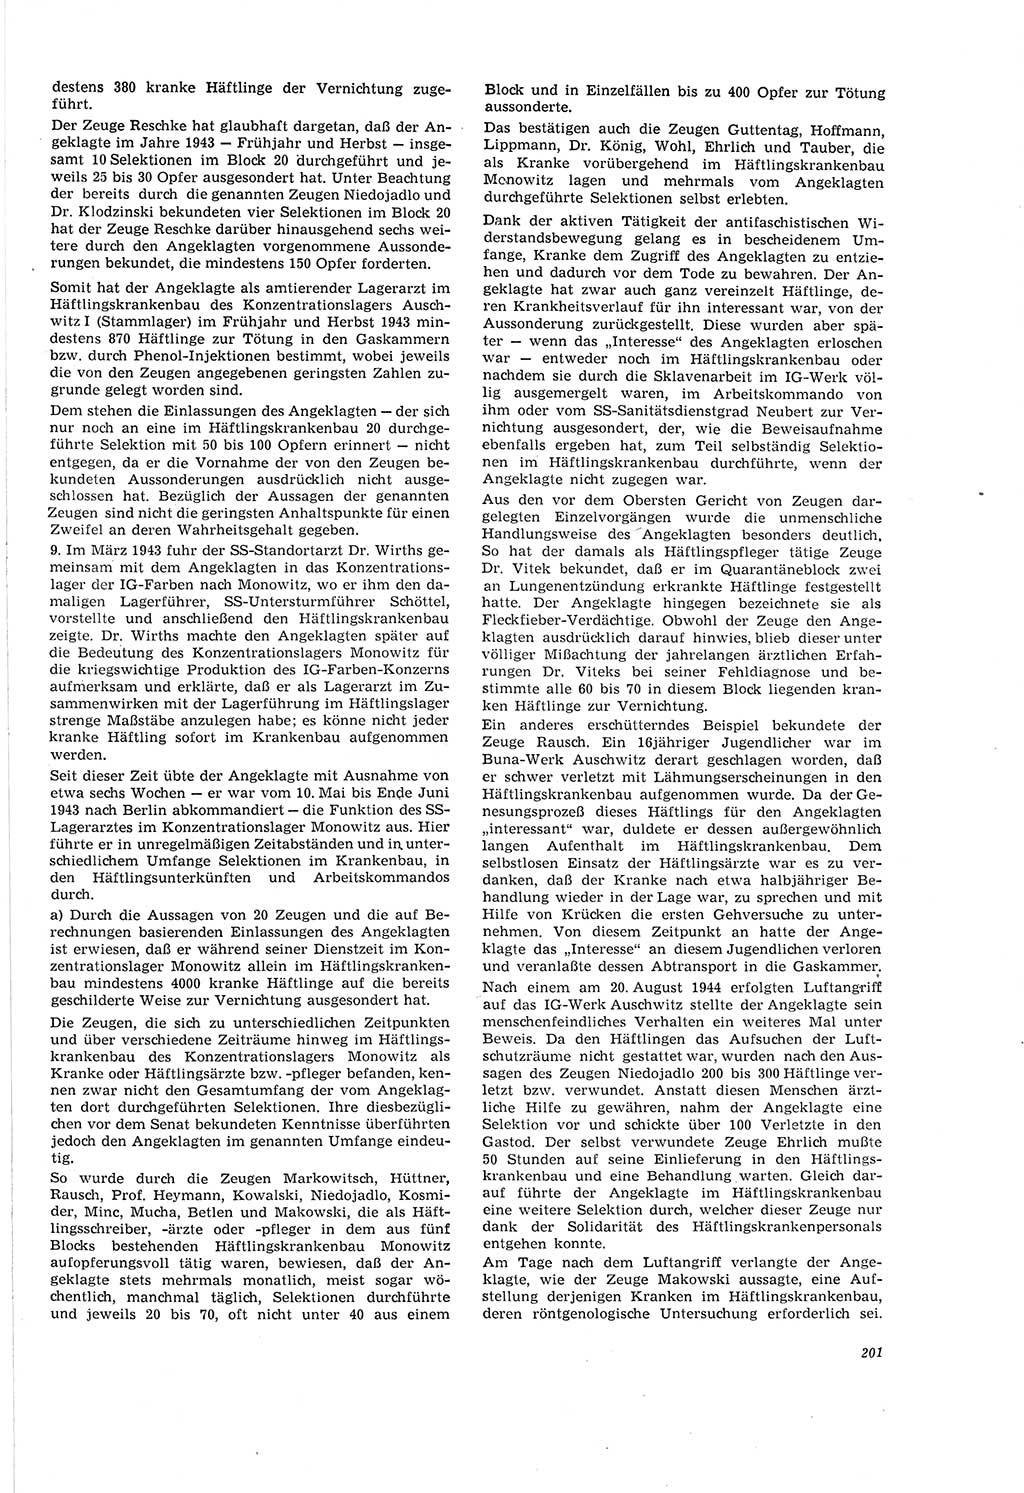 Neue Justiz (NJ), Zeitschrift für Recht und Rechtswissenschaft [Deutsche Demokratische Republik (DDR)], 20. Jahrgang 1966, Seite 201 (NJ DDR 1966, S. 201)